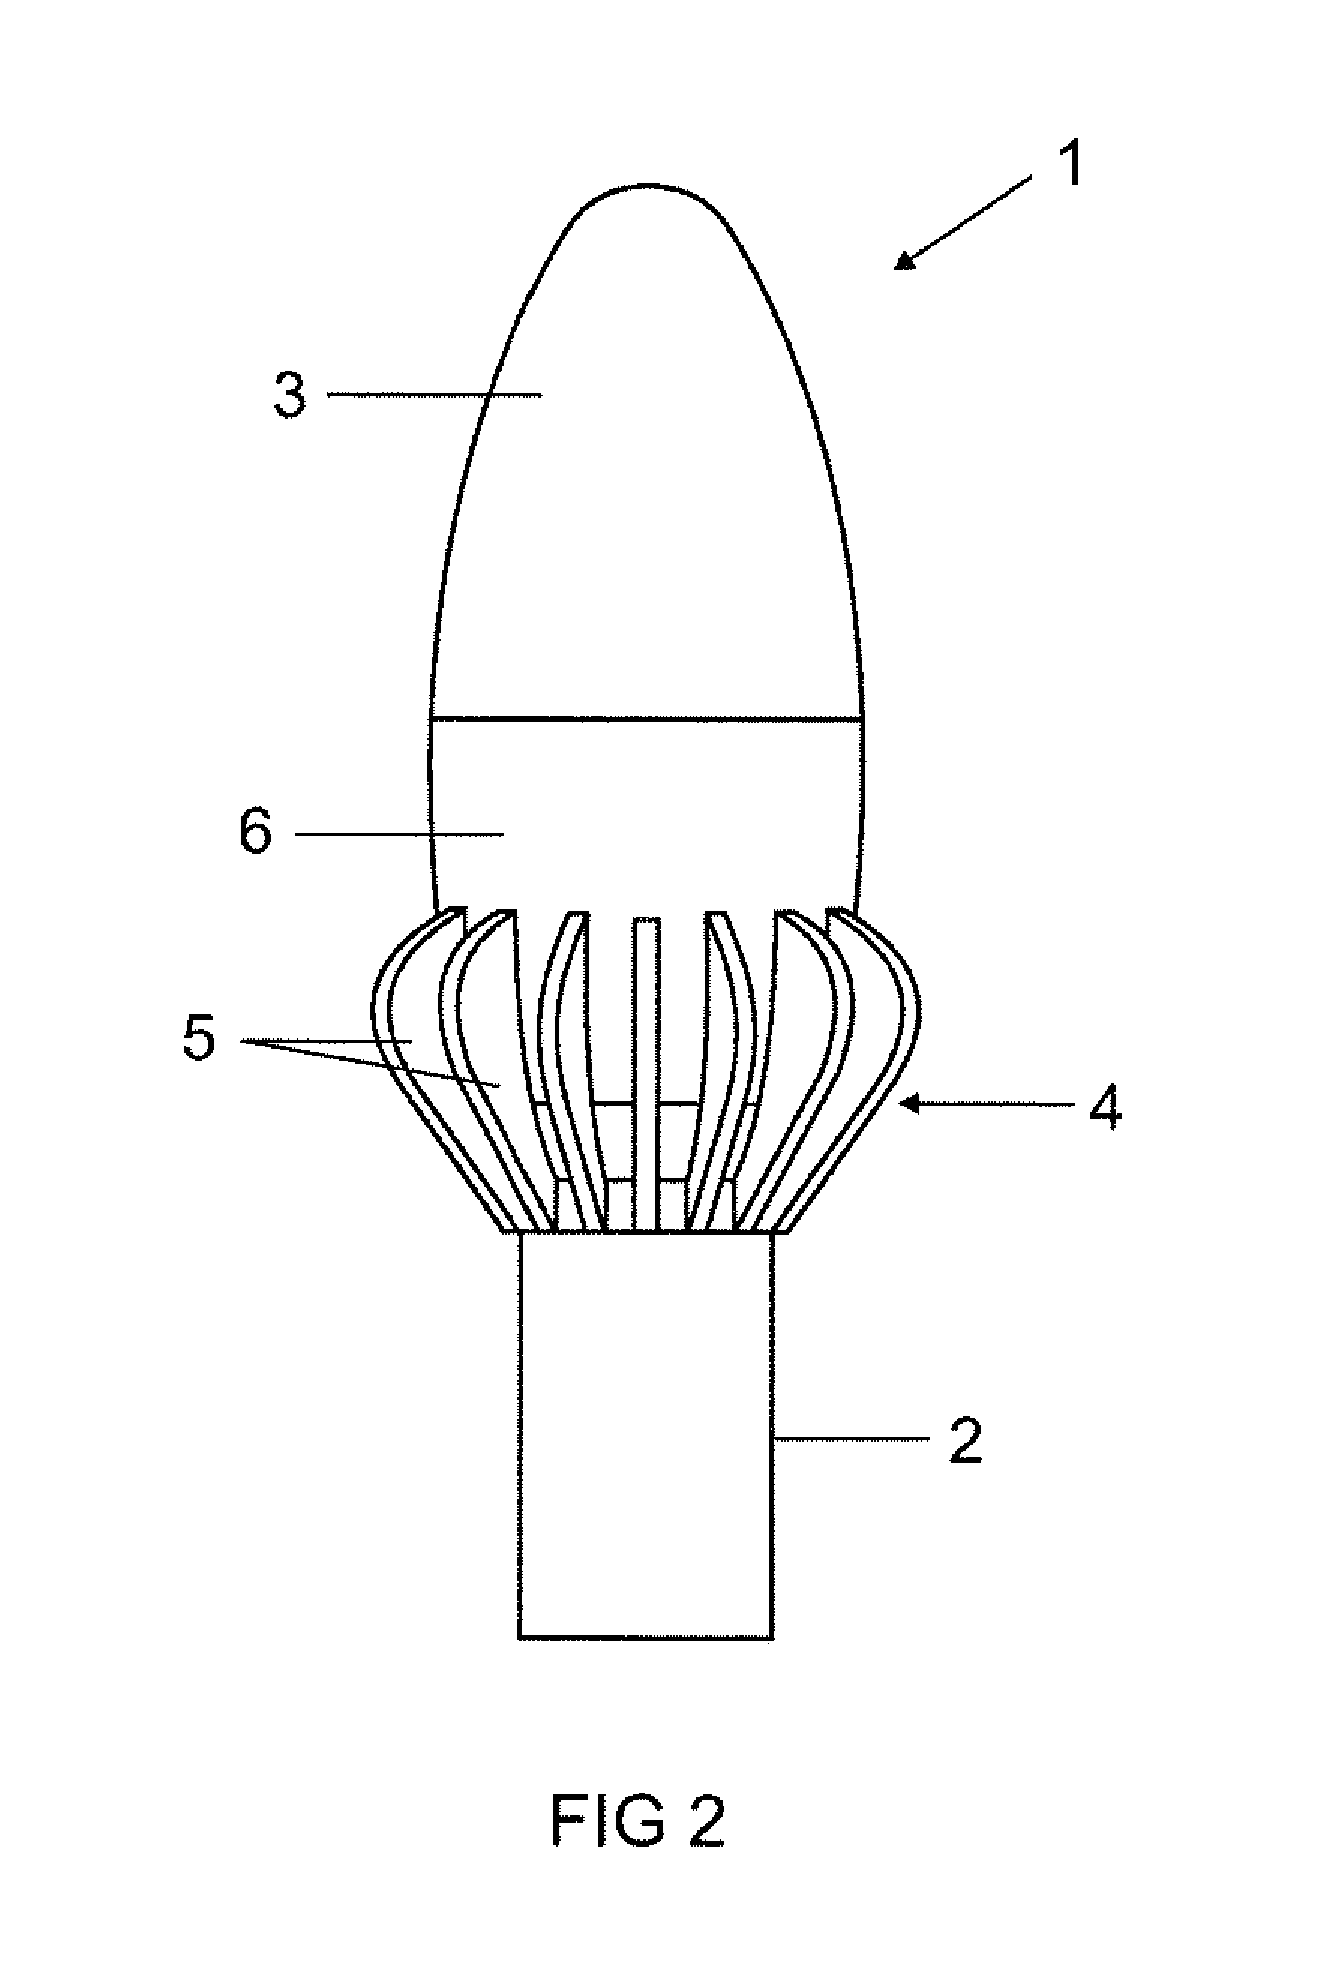 Illumination apparatus with a heat sink